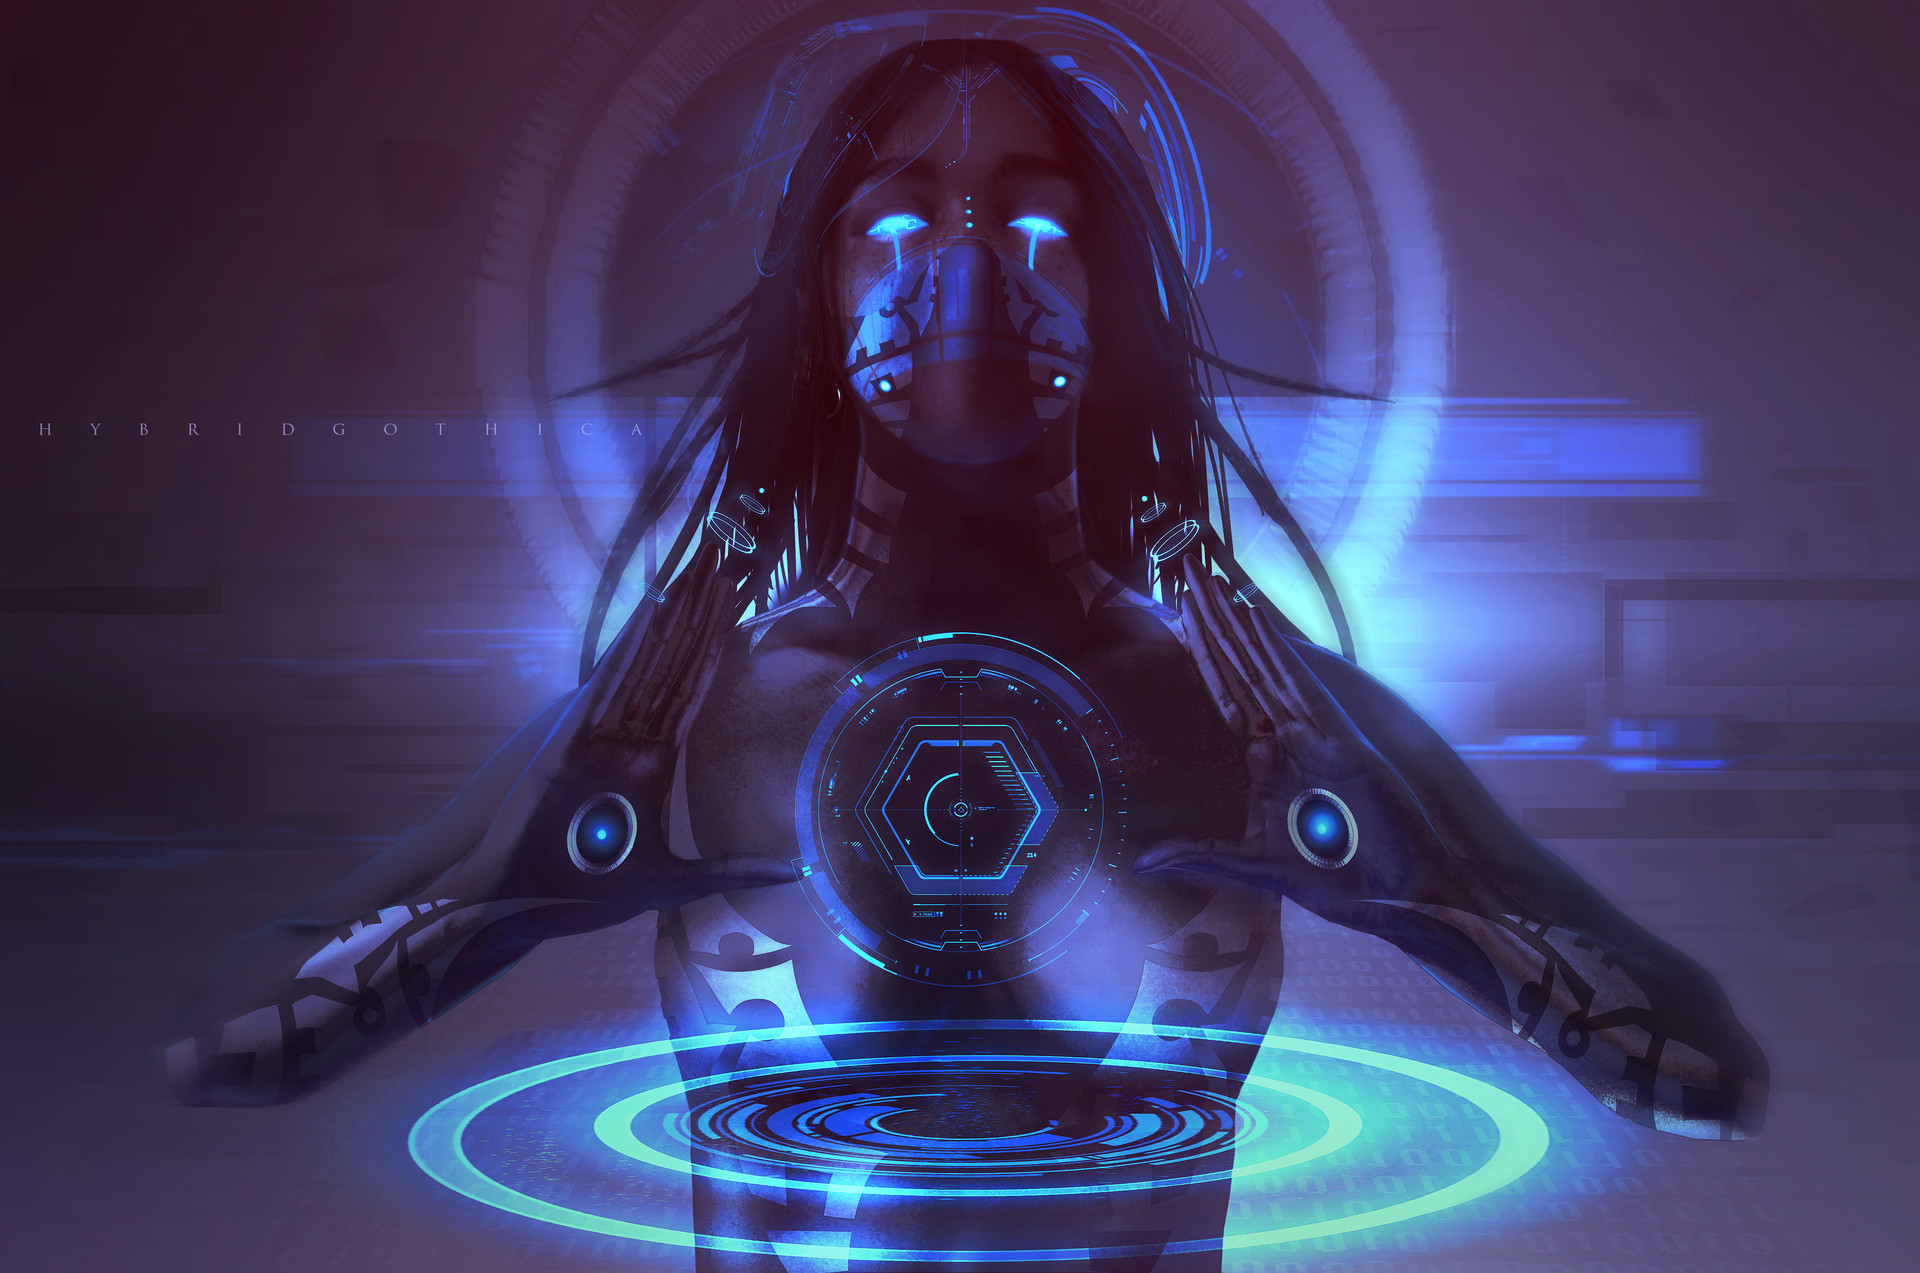 Аватар искусственный интеллект. Девушка киборг Sci Fi. Киберпанк нейрофанк. Cyberpunk Sci-Fi киборги. Cyberpunk 2077 киборги арт.